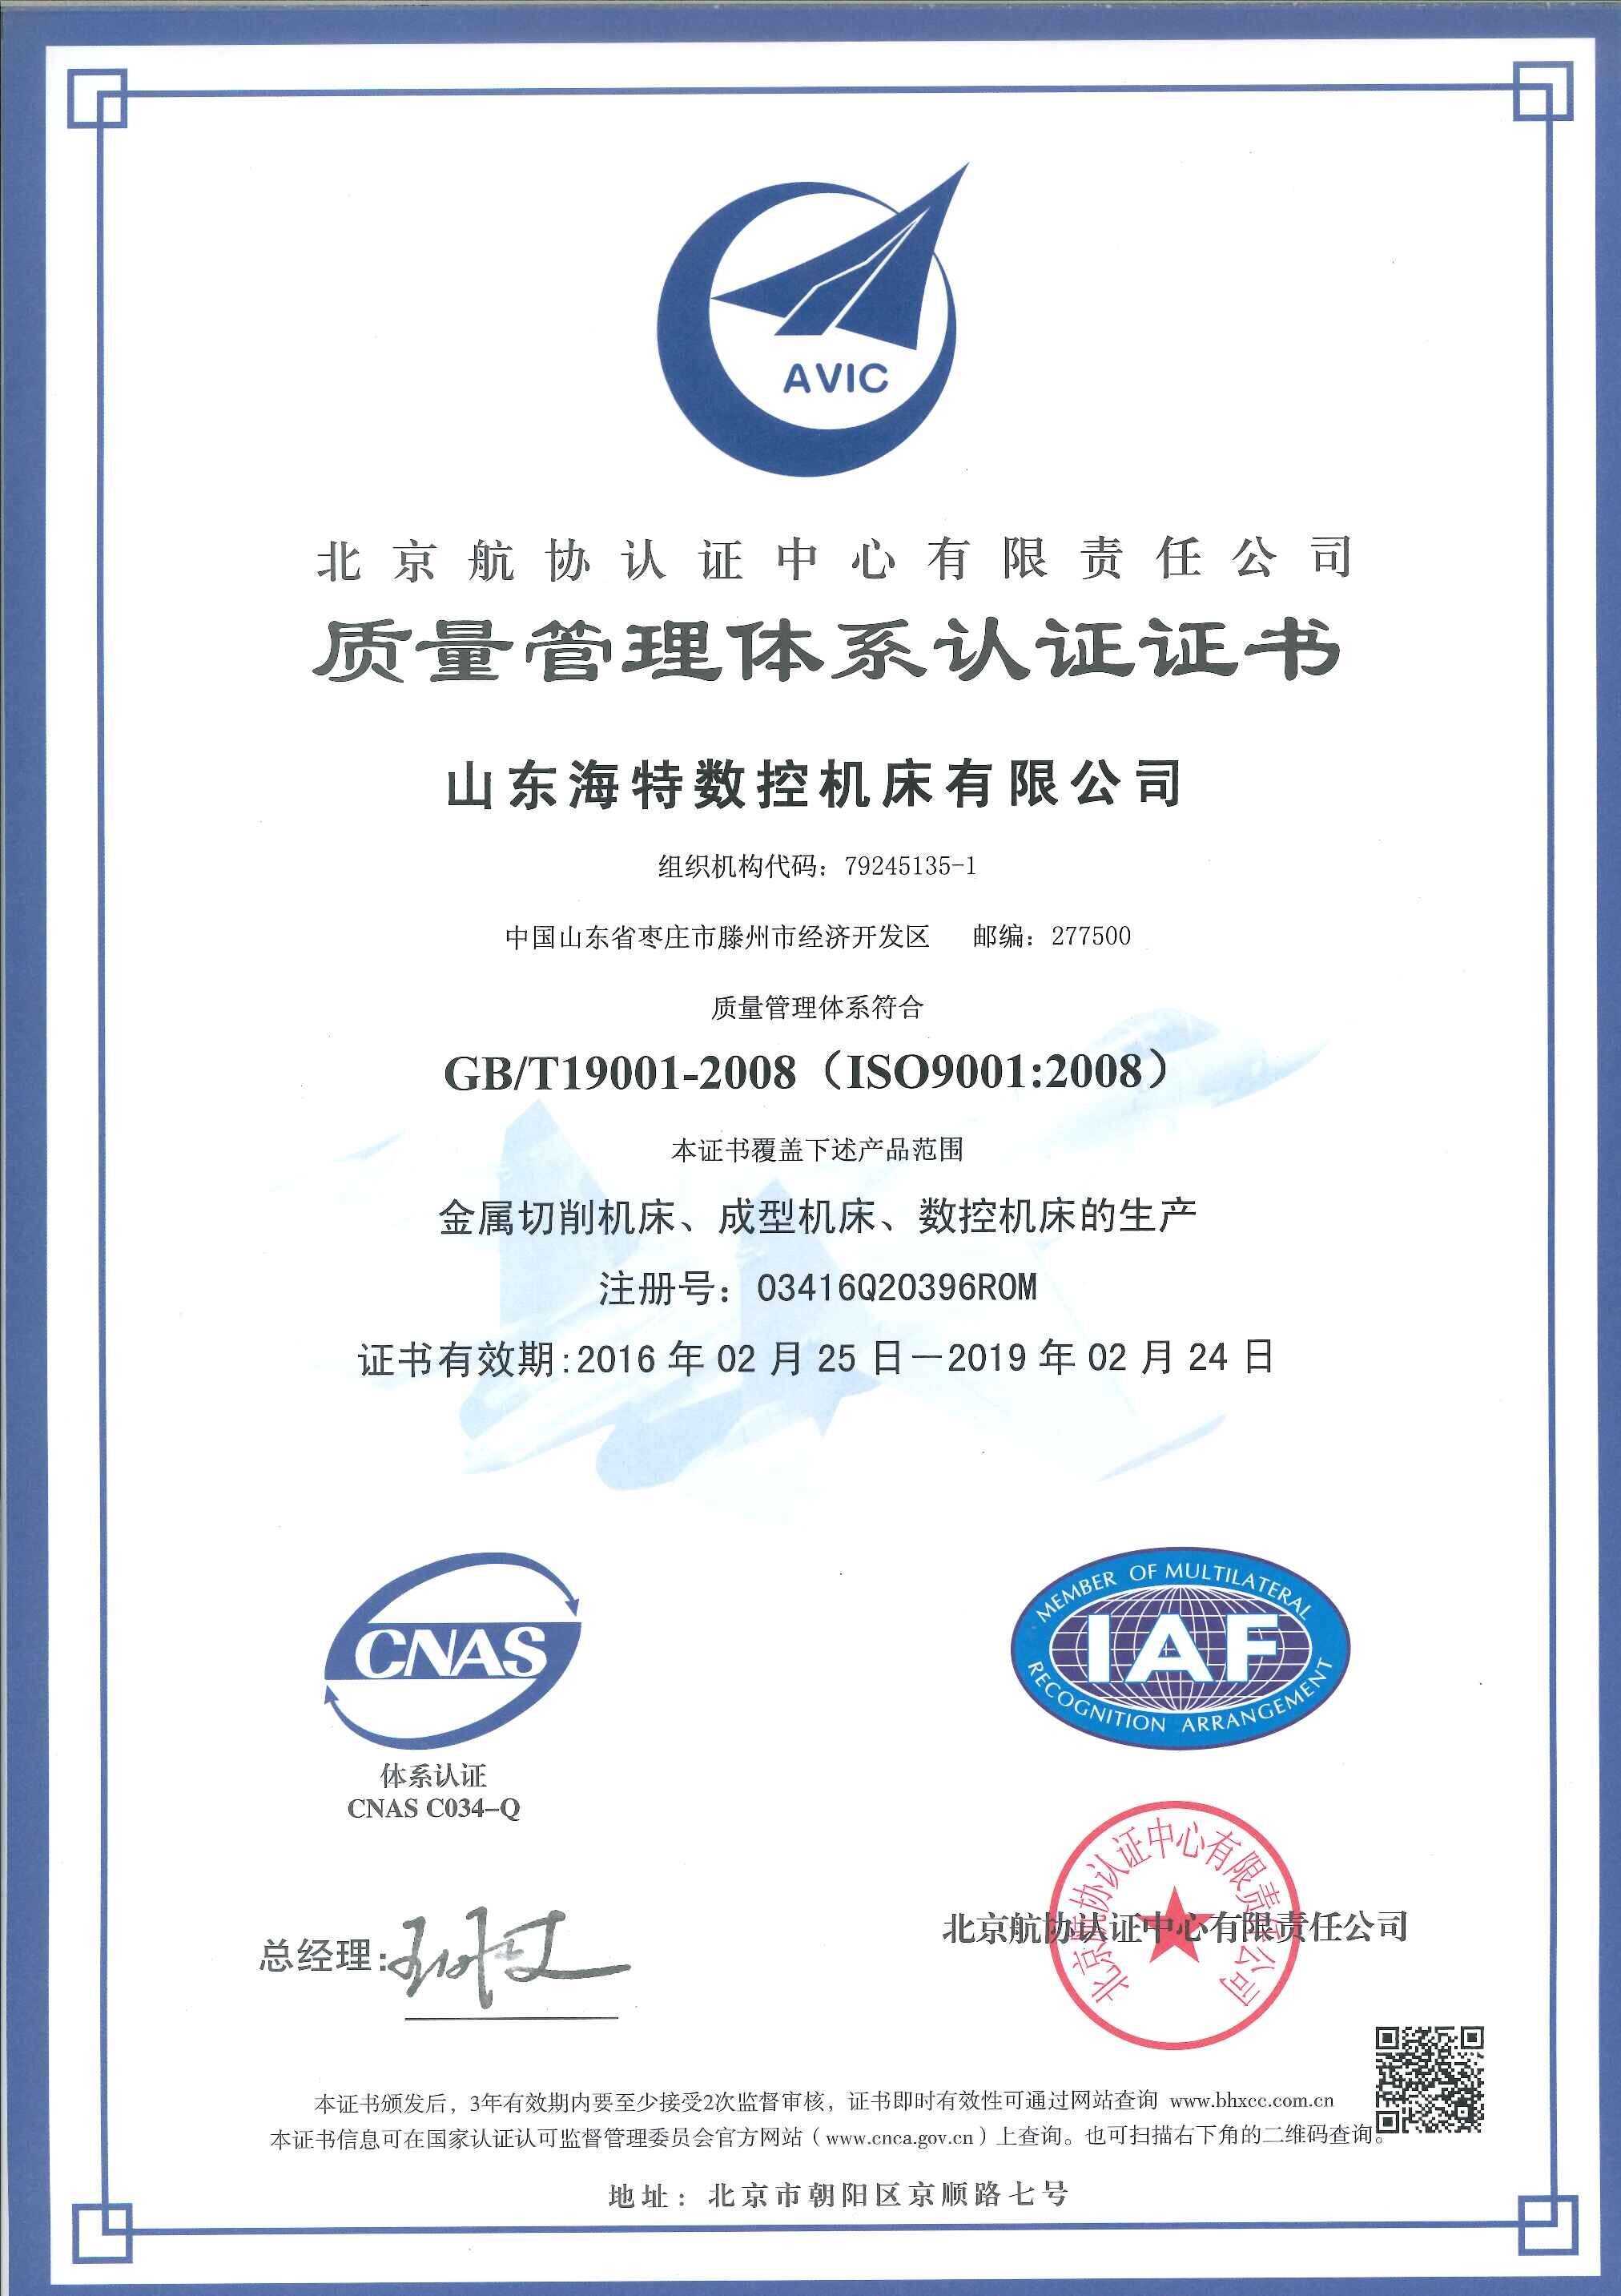 9000认证 中文版